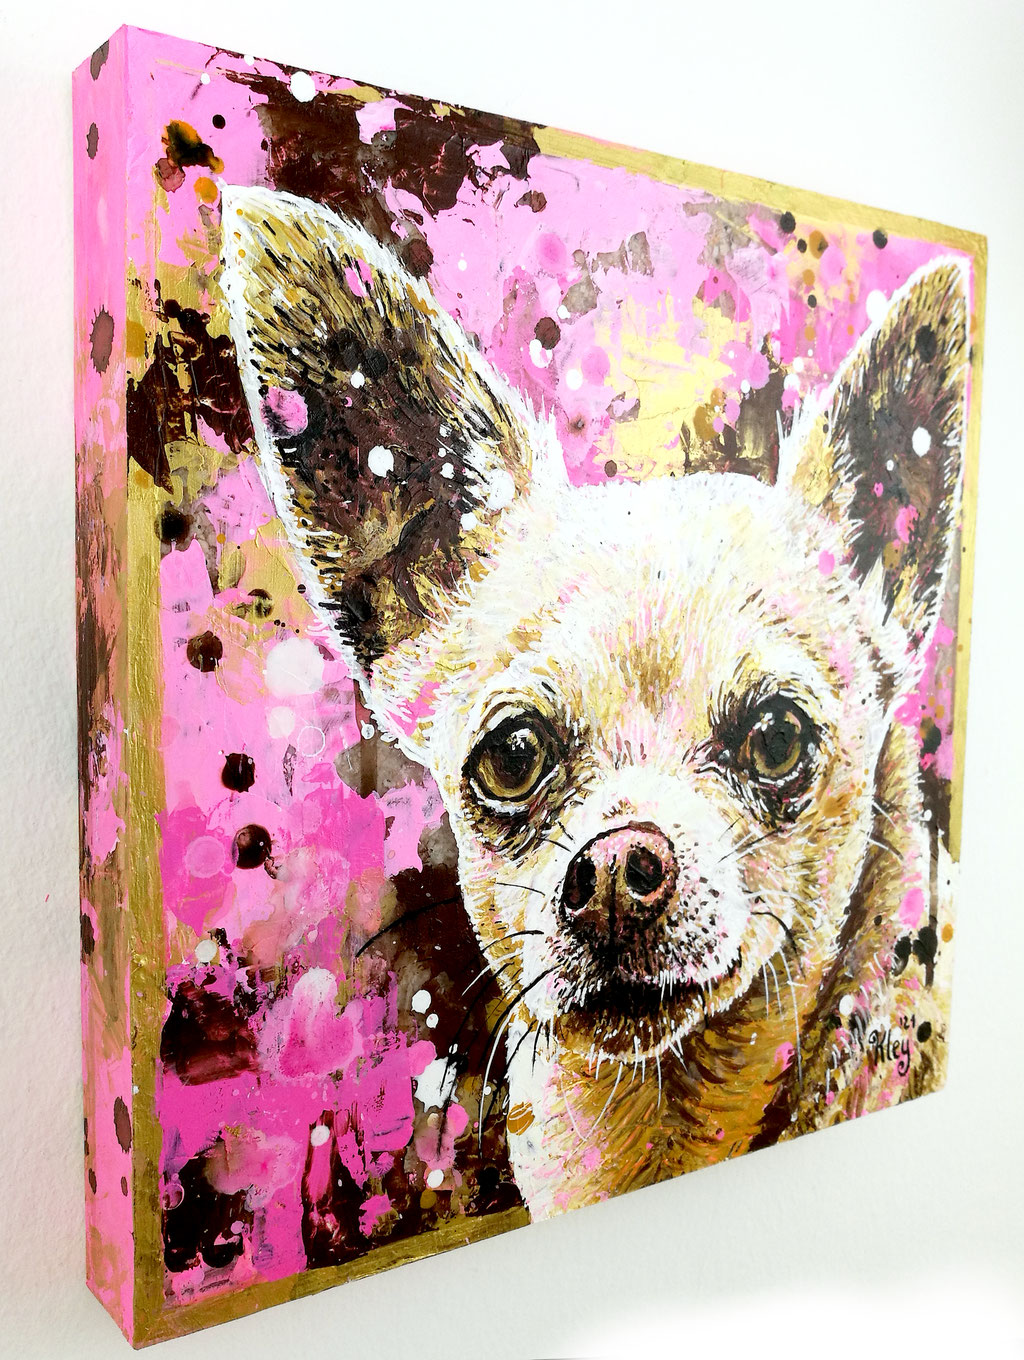 Chihuahua Erinnerungsbild Andenken an verstorbenen Hund Urnenbild mit Tierporträt